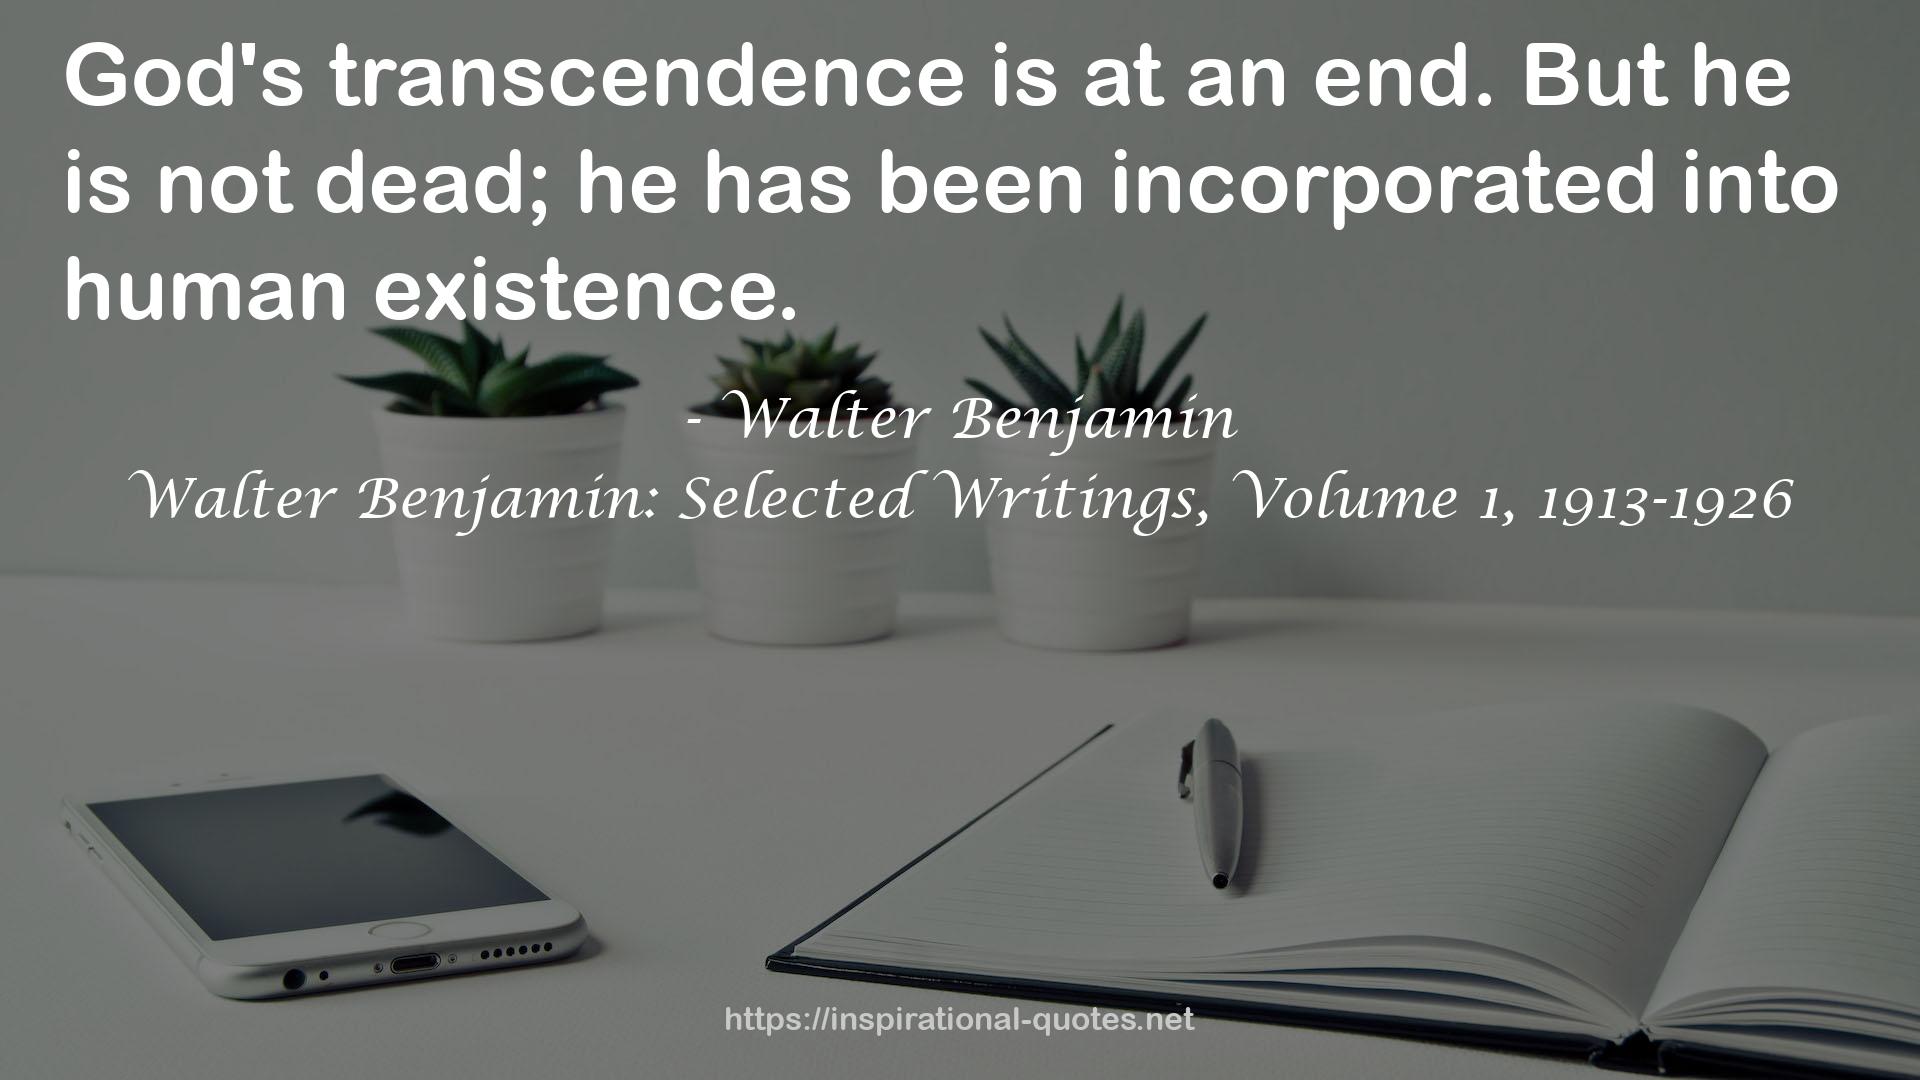 Walter Benjamin: Selected Writings, Volume 1, 1913-1926 QUOTES